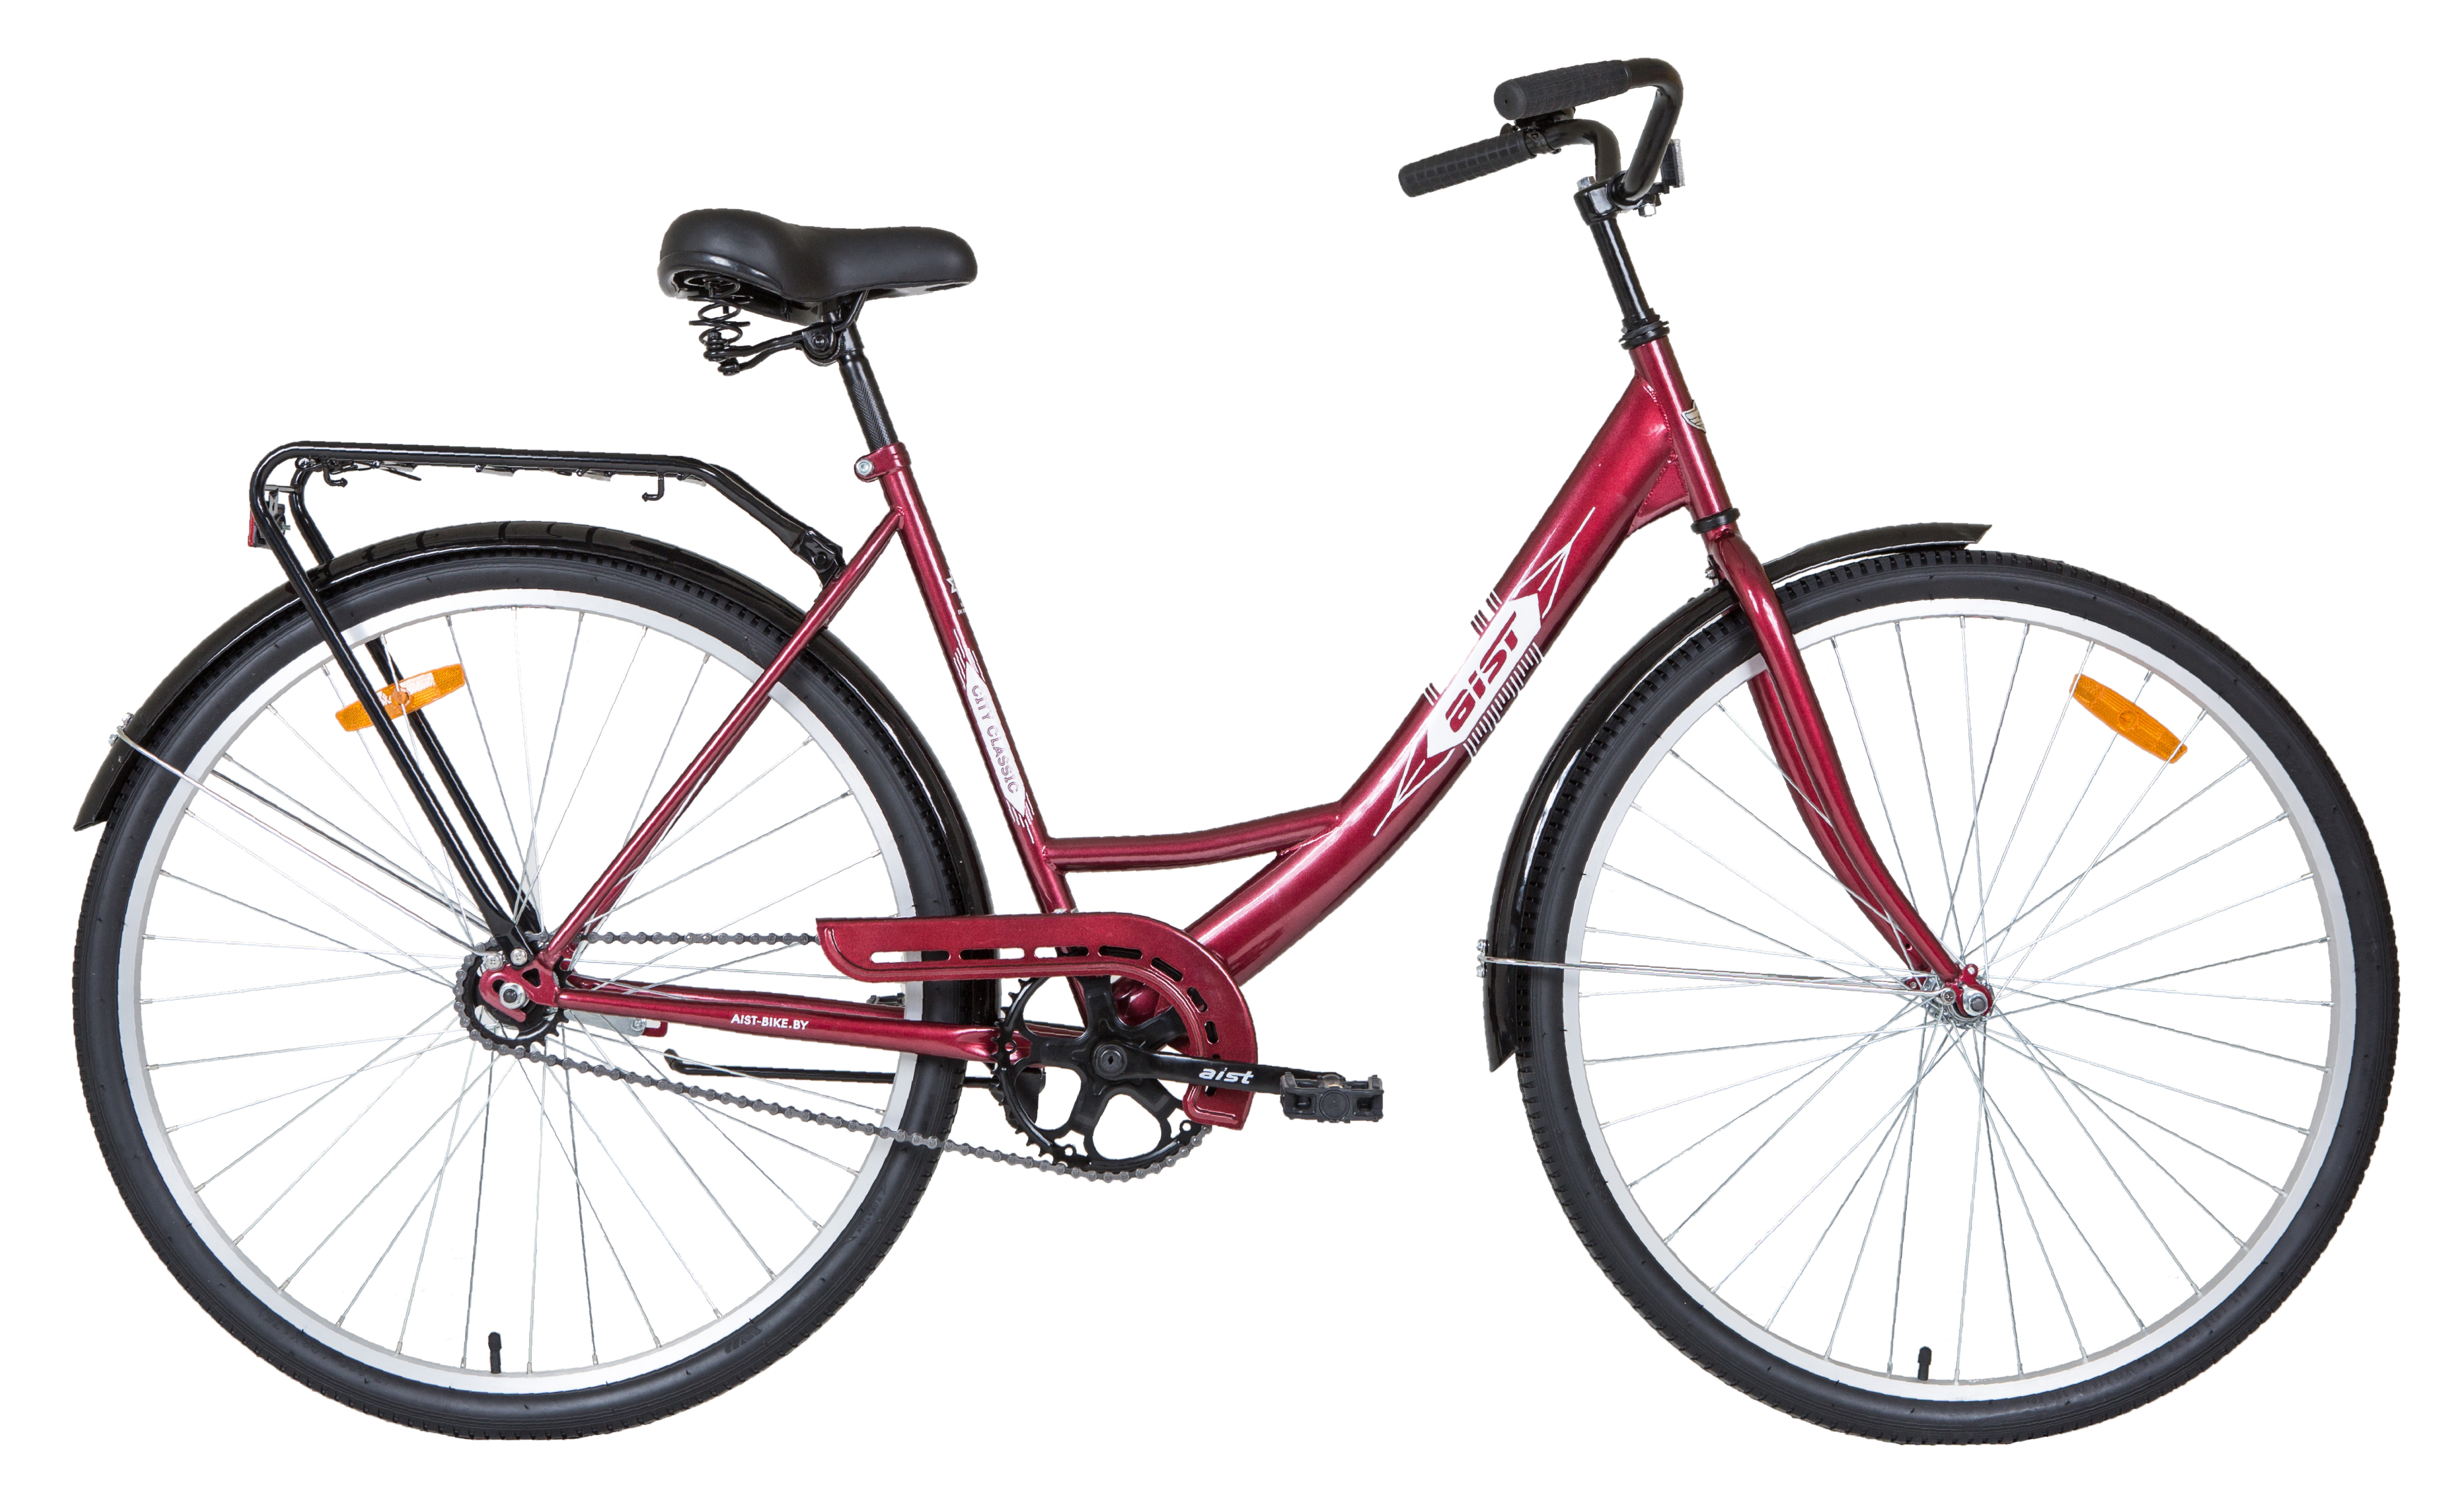 Купить велосипед в беларуси с доставкой. Велосипед Aist 28-245 вишневый. Велосипед Аист 245. Женский велосипед Аист 28-245. Велосипед Aist 28-245 Лазурный.